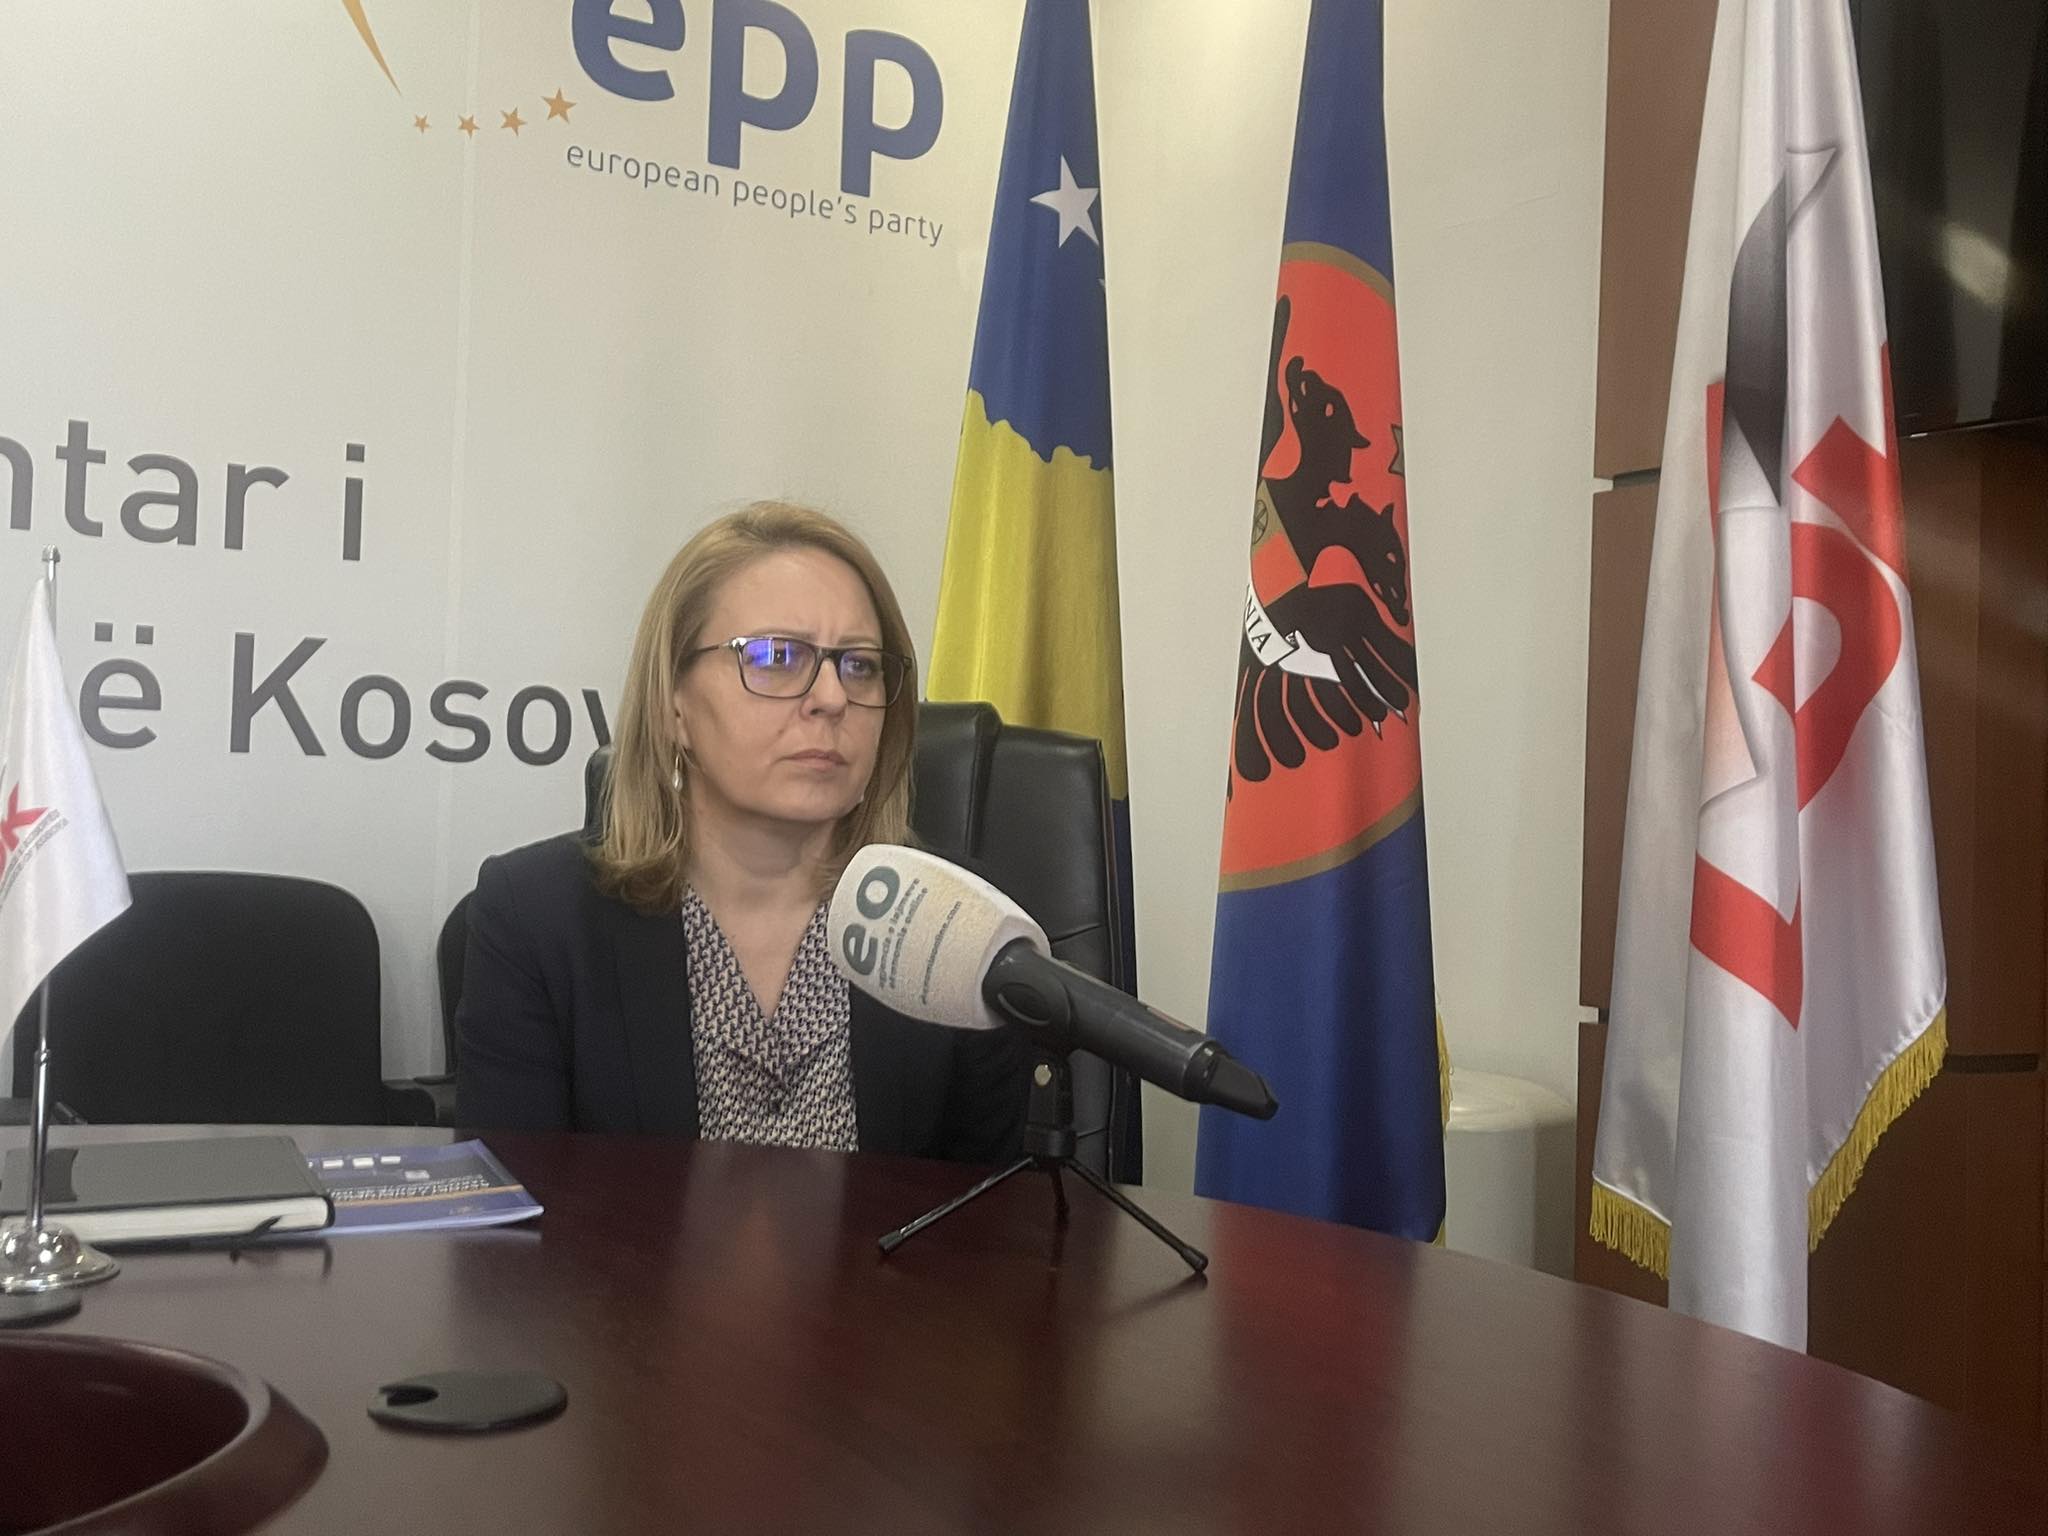 Marrëveshja për burgje me Danimarkën  Bajrami  Prapë votoj kundër   dështuan të sjellin investime  po tentojnë të sjellin të burgosur